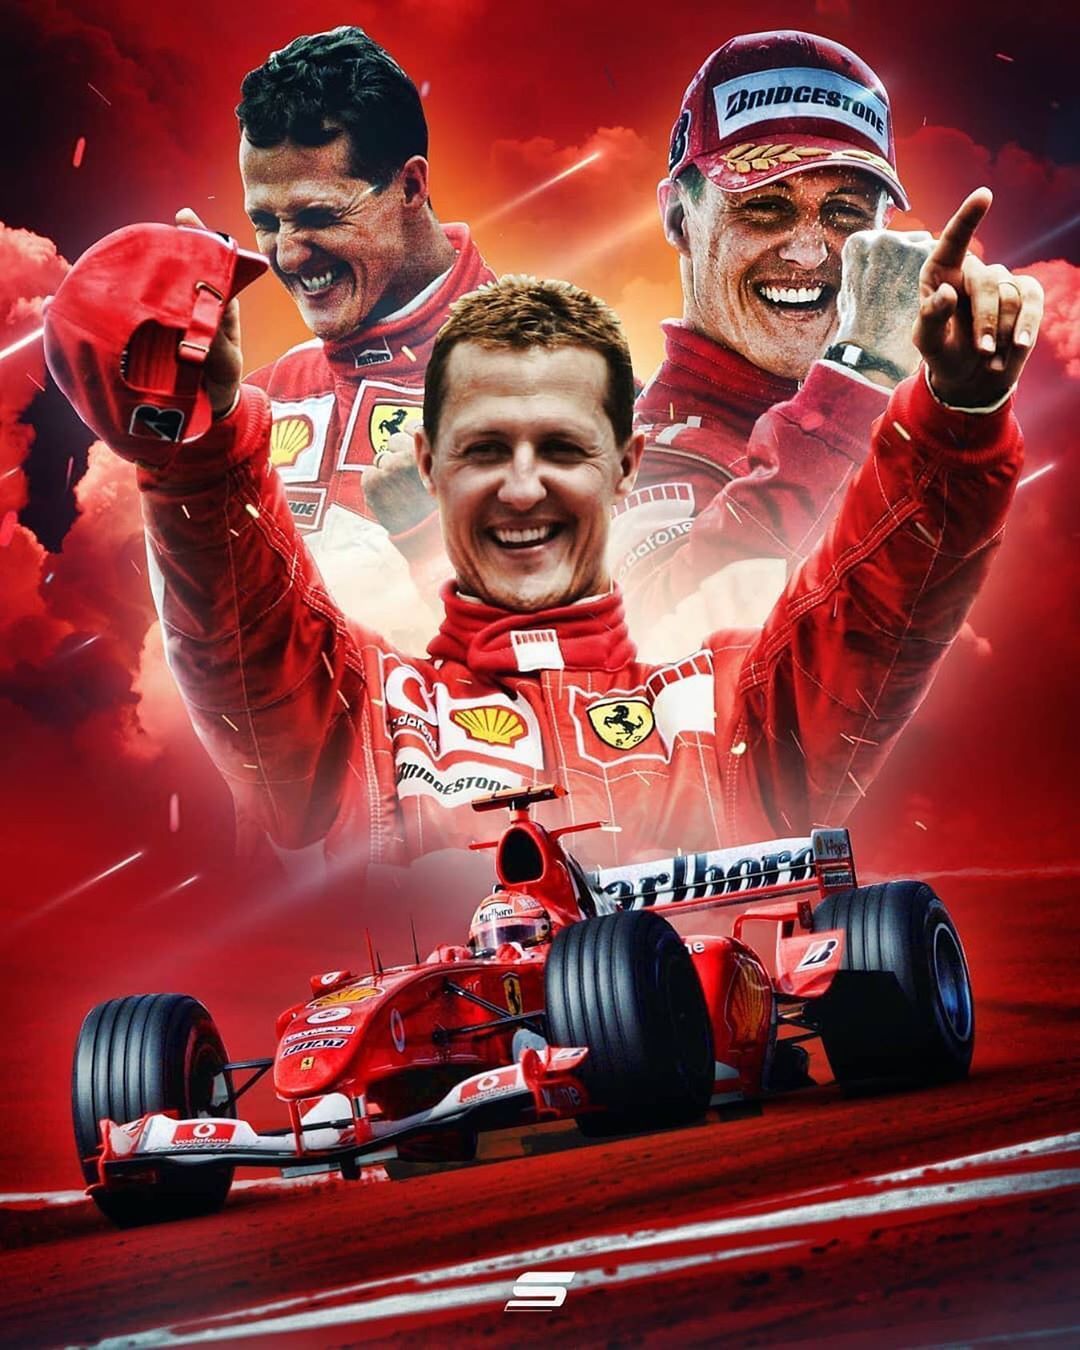 Schumacher Wallpaper